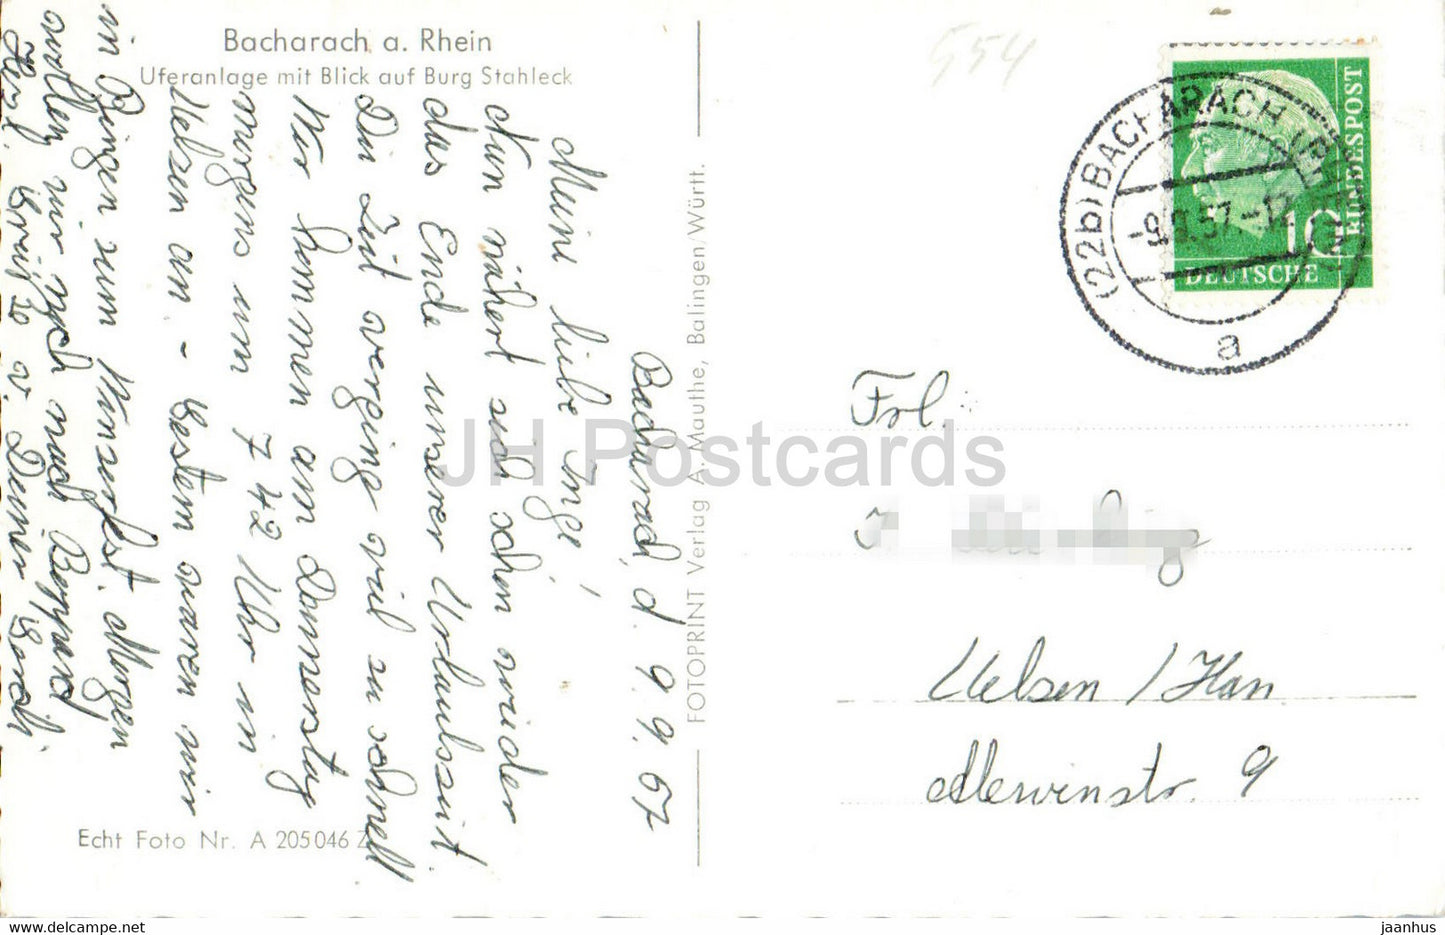 Bacharach a Rhein - Uferanlage mit Blick auf Burg Stahleck - alte Postkarte - 1957 - Deutschland - gebraucht